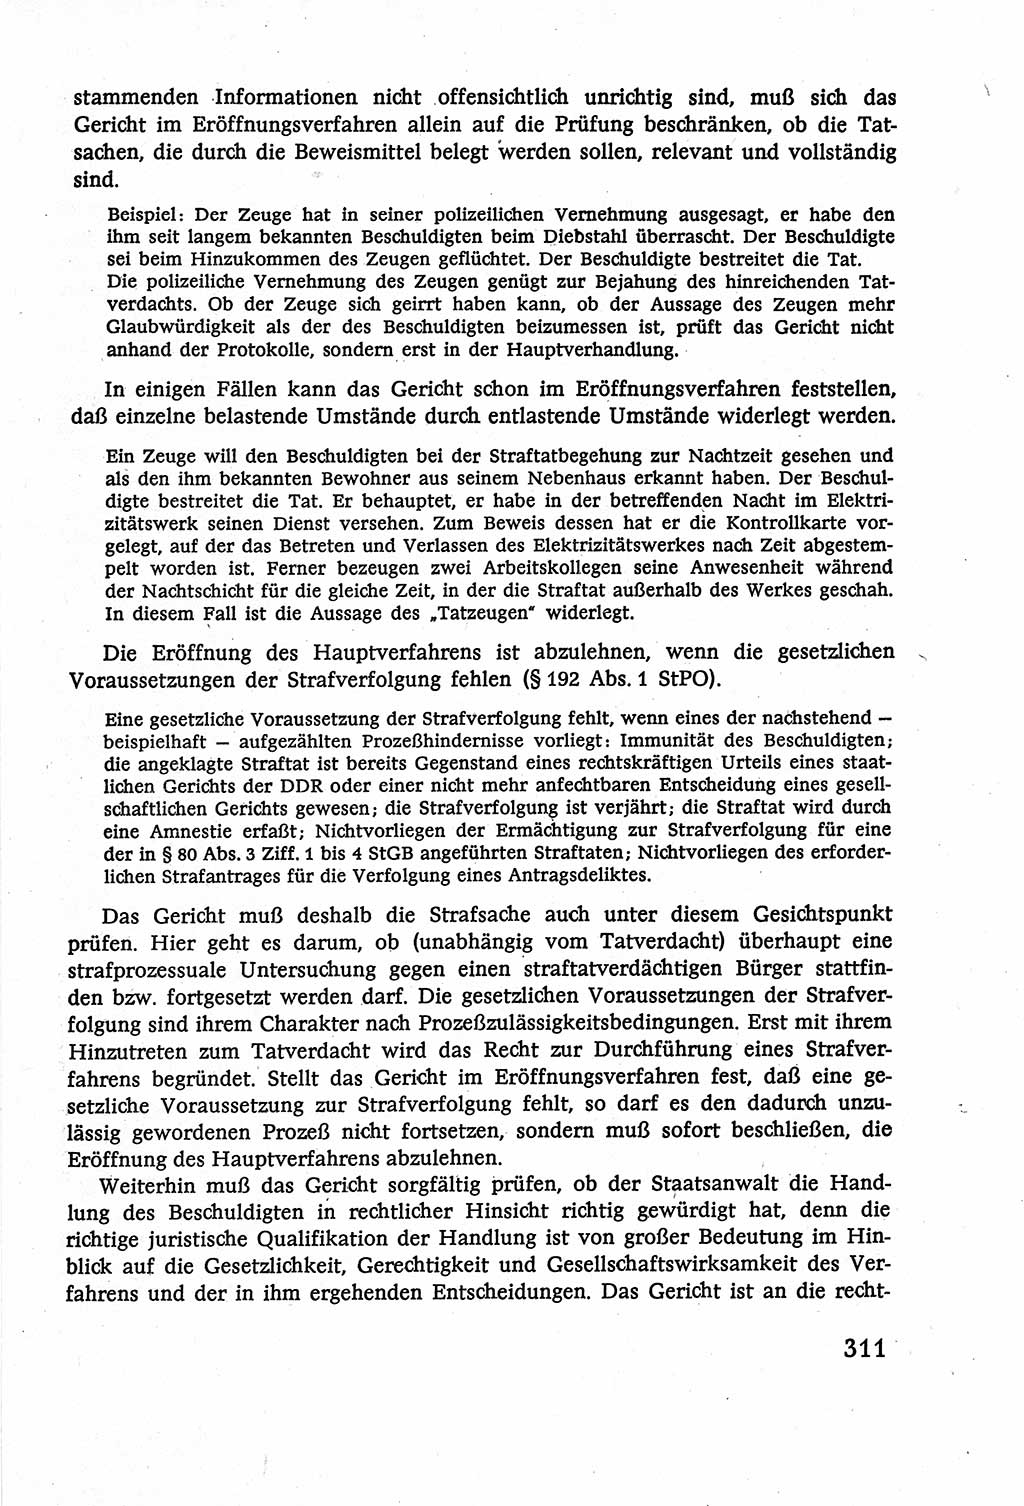 Strafverfahrensrecht [Deutsche Demokratische Republik (DDR)], Lehrbuch 1977, Seite 311 (Strafverf.-R. DDR Lb. 1977, S. 311)